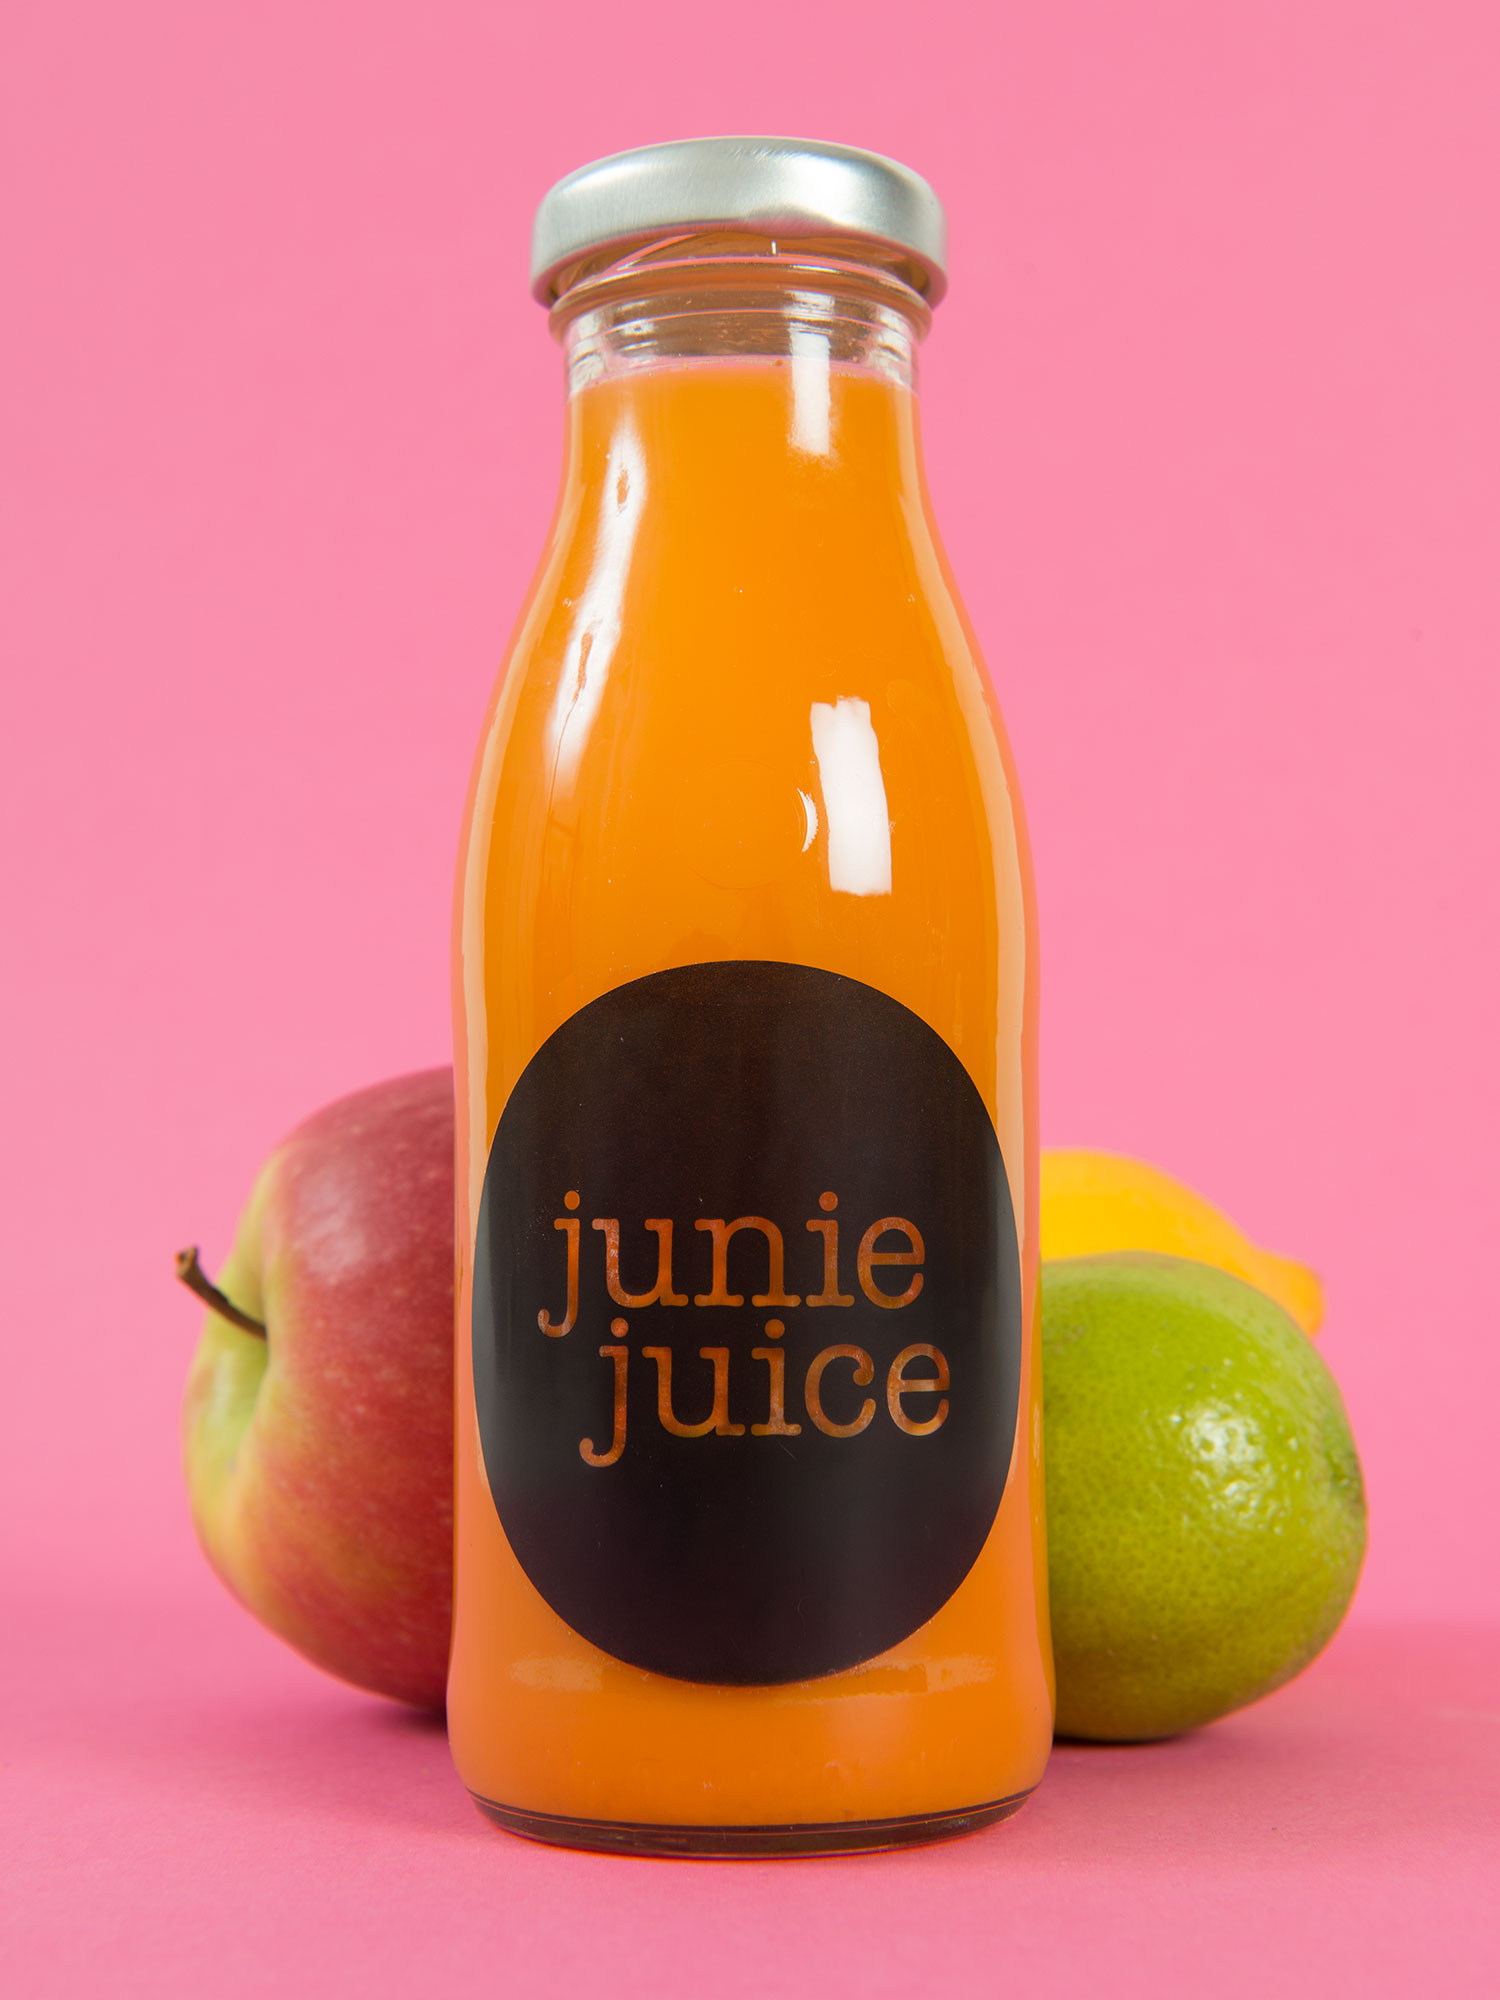 junie juice